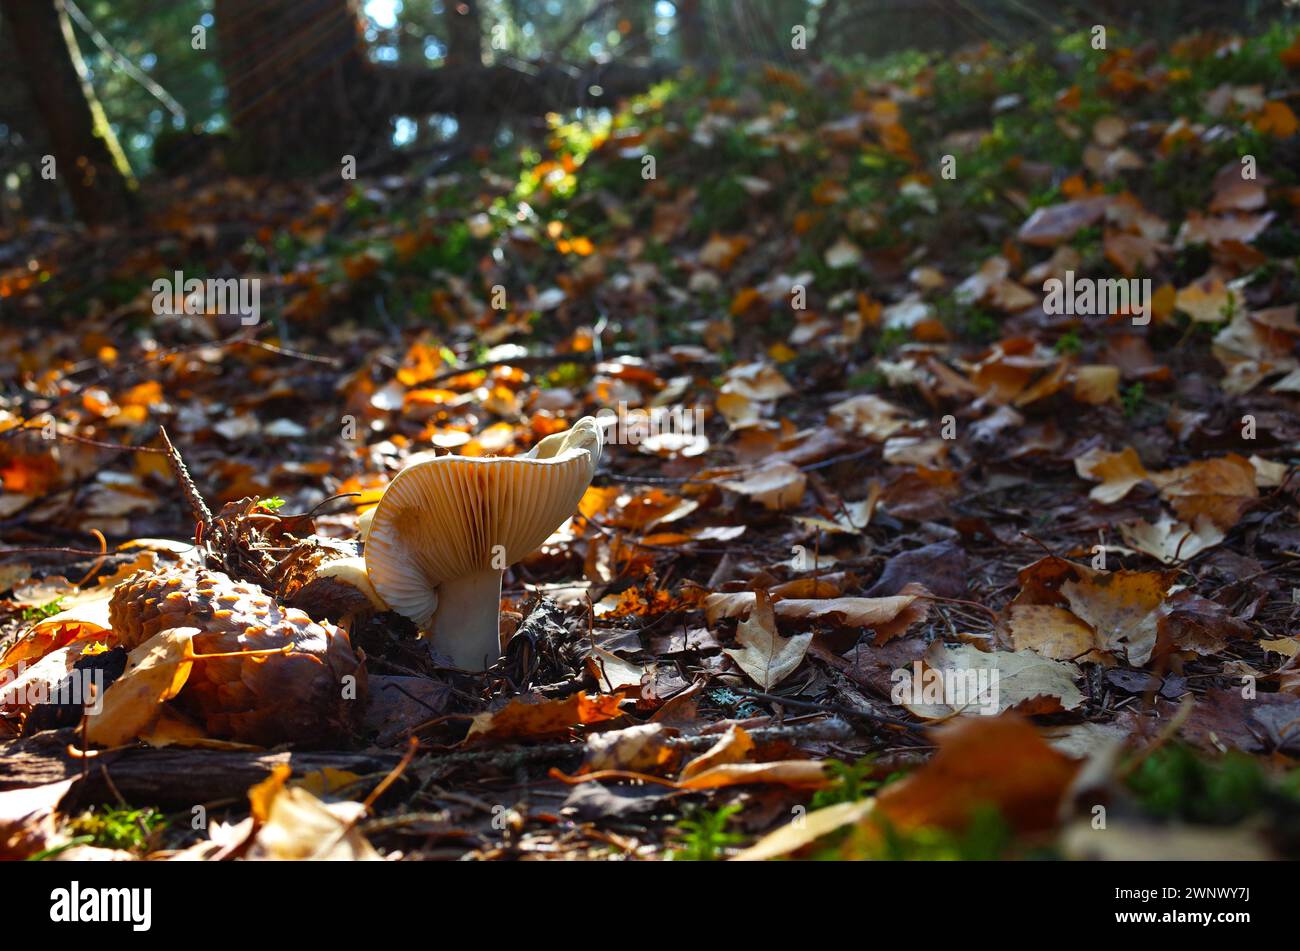 Milk mushroom (Lactarius vellereus) in forest close-up photo with short focus, Nature of Sweden Stock Photo